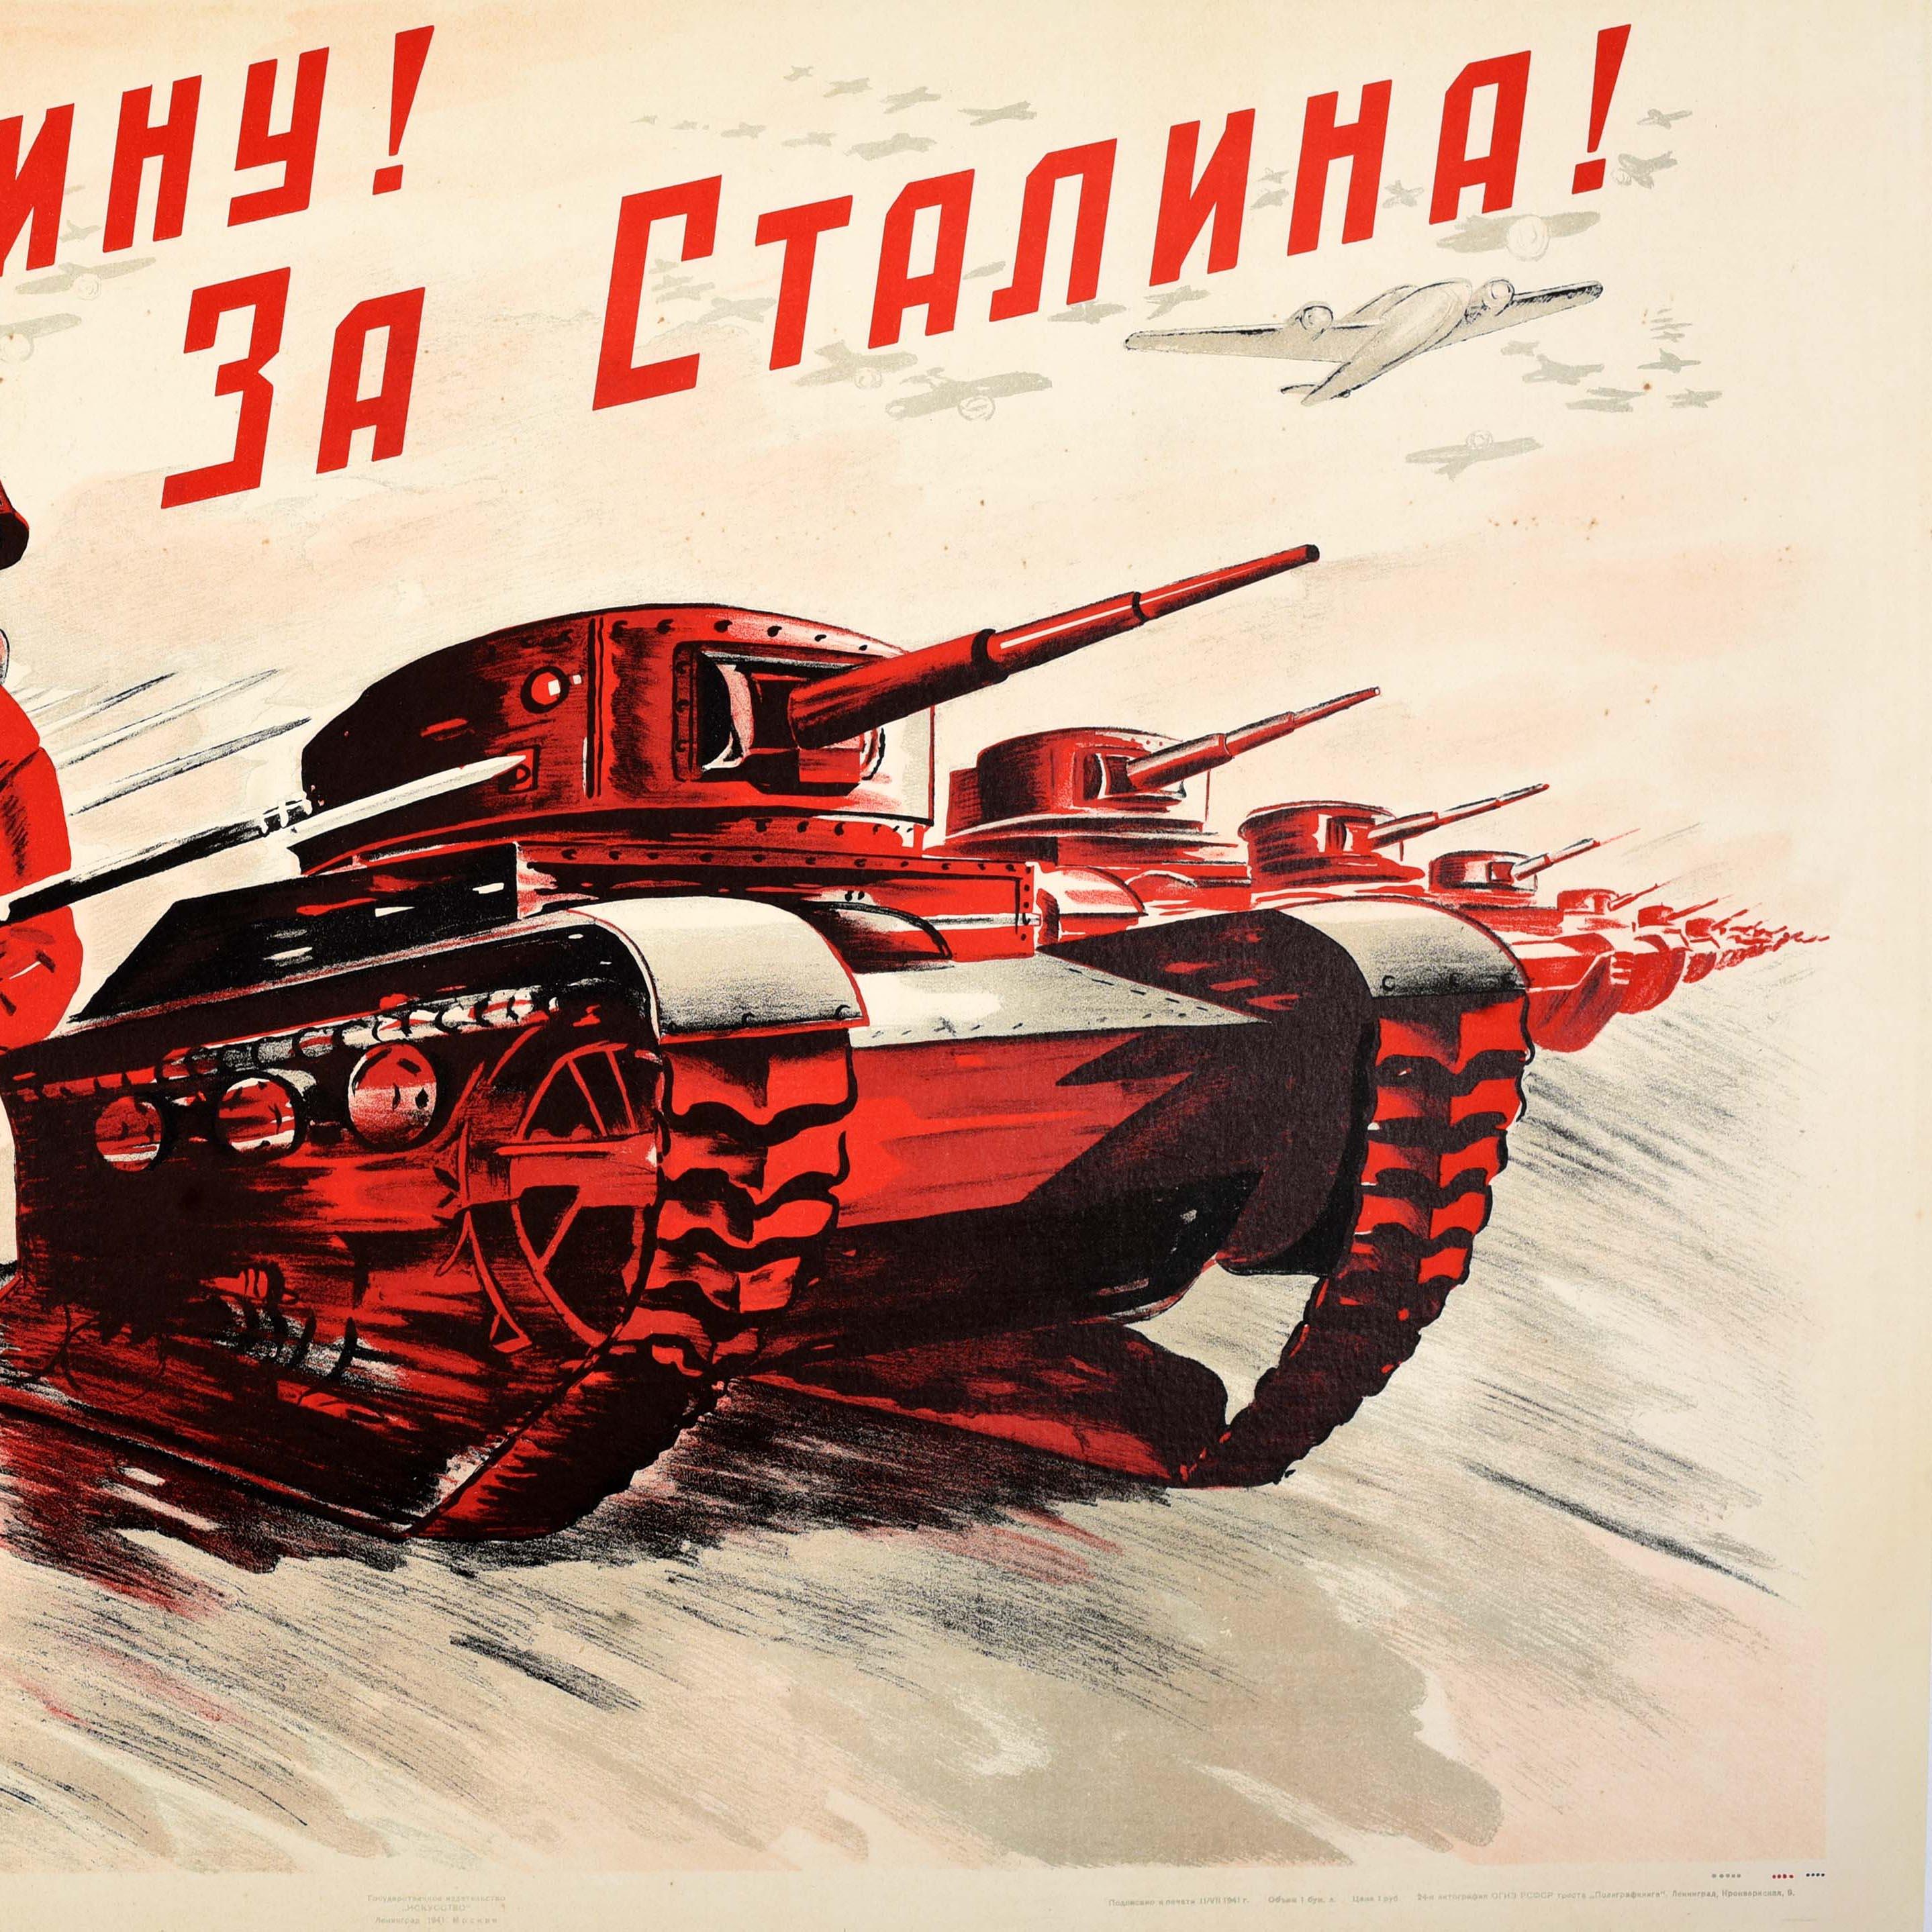 Seltenes originales sowjetisches Propagandaplakat aus dem Zweiten Weltkrieg - Für das Vaterland! Für Stalin! / За Родину! За Сталина! - zeigt einen Trupp Soldaten mit Bajonettgewehren, die neben einer Reihe von Militärpanzern vorwärts stürmen, mit